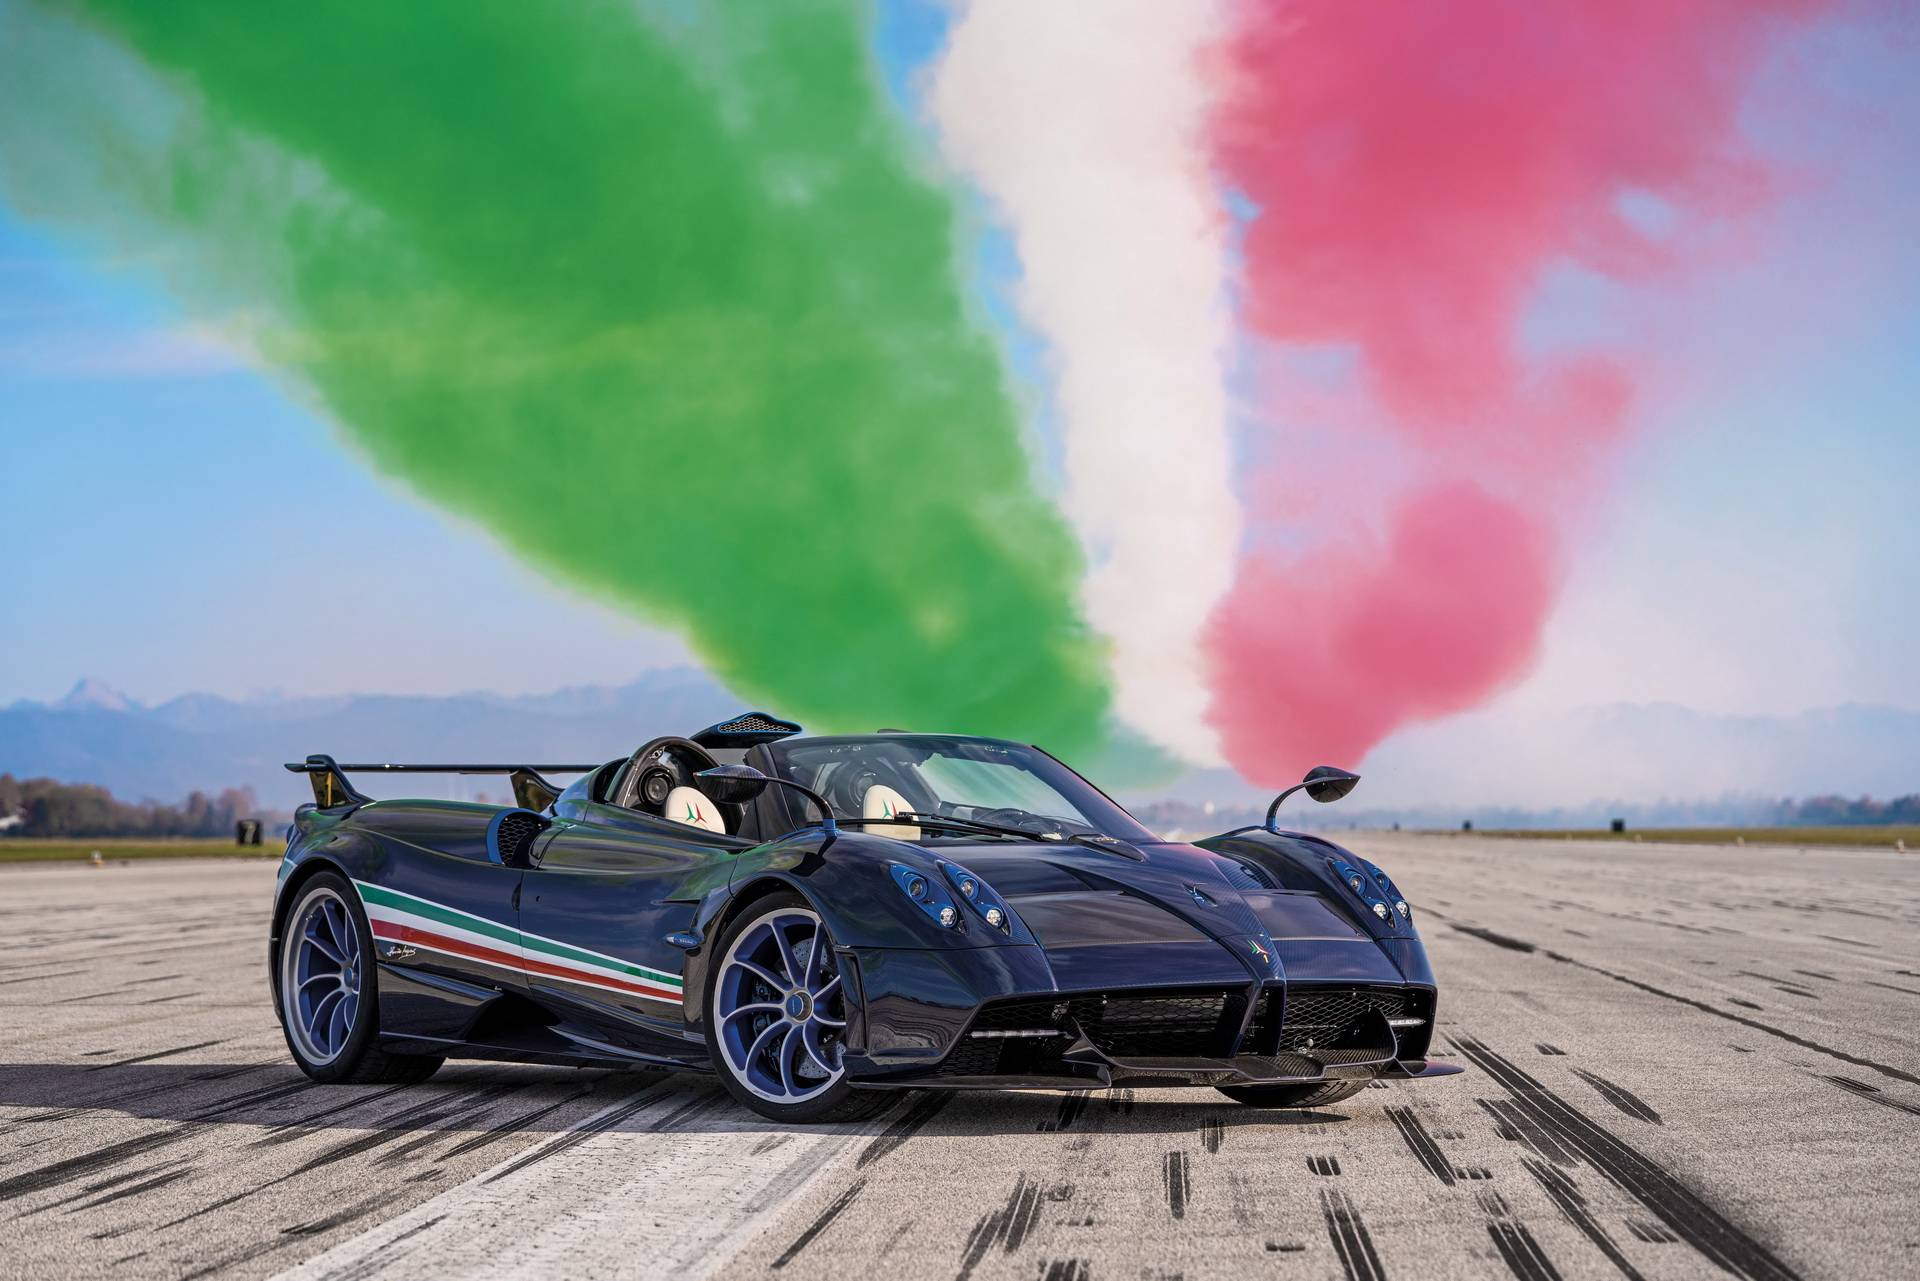 新款帕加尼huayra tricolore超级跑车亮相,全球限量3台,售价550万欧元